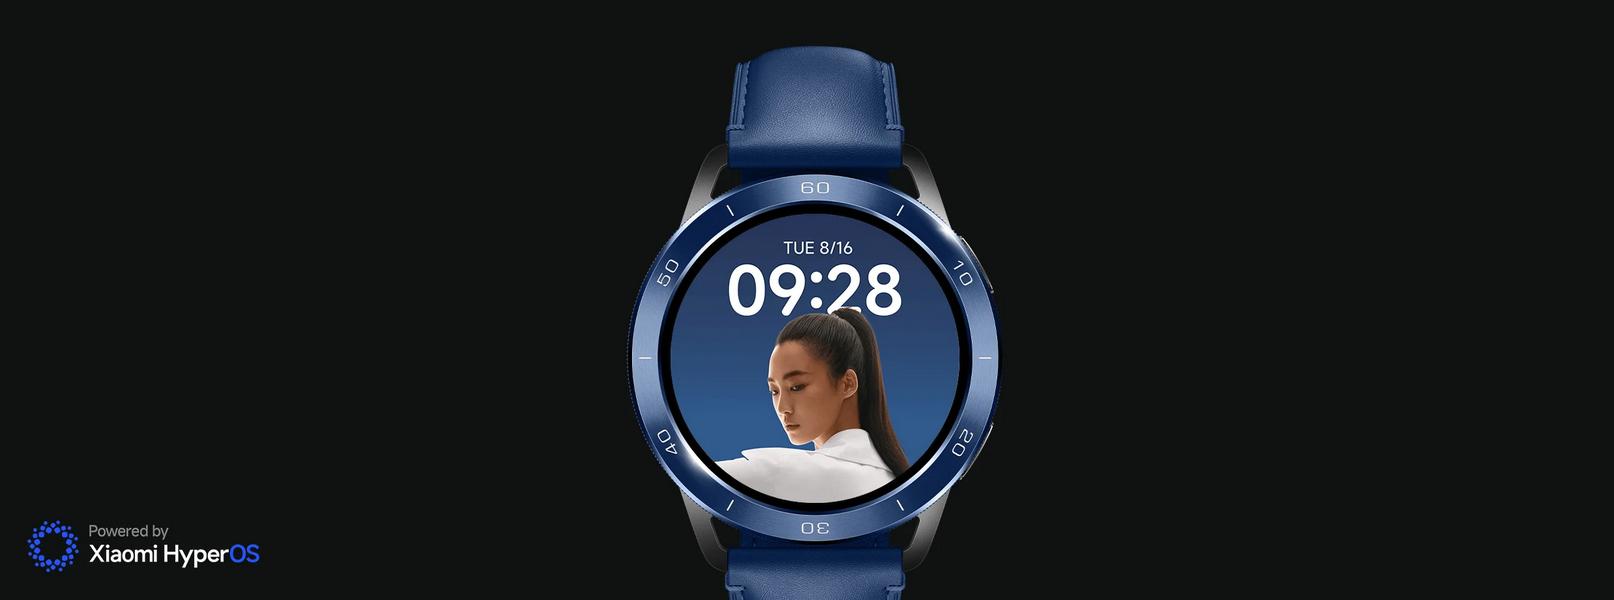 Smartwatch Xiaomi Watch S3 - nowa, portretowa tarcza zegarka: ożyw swój wyświetlacz wyrazistymi zdjęciami!